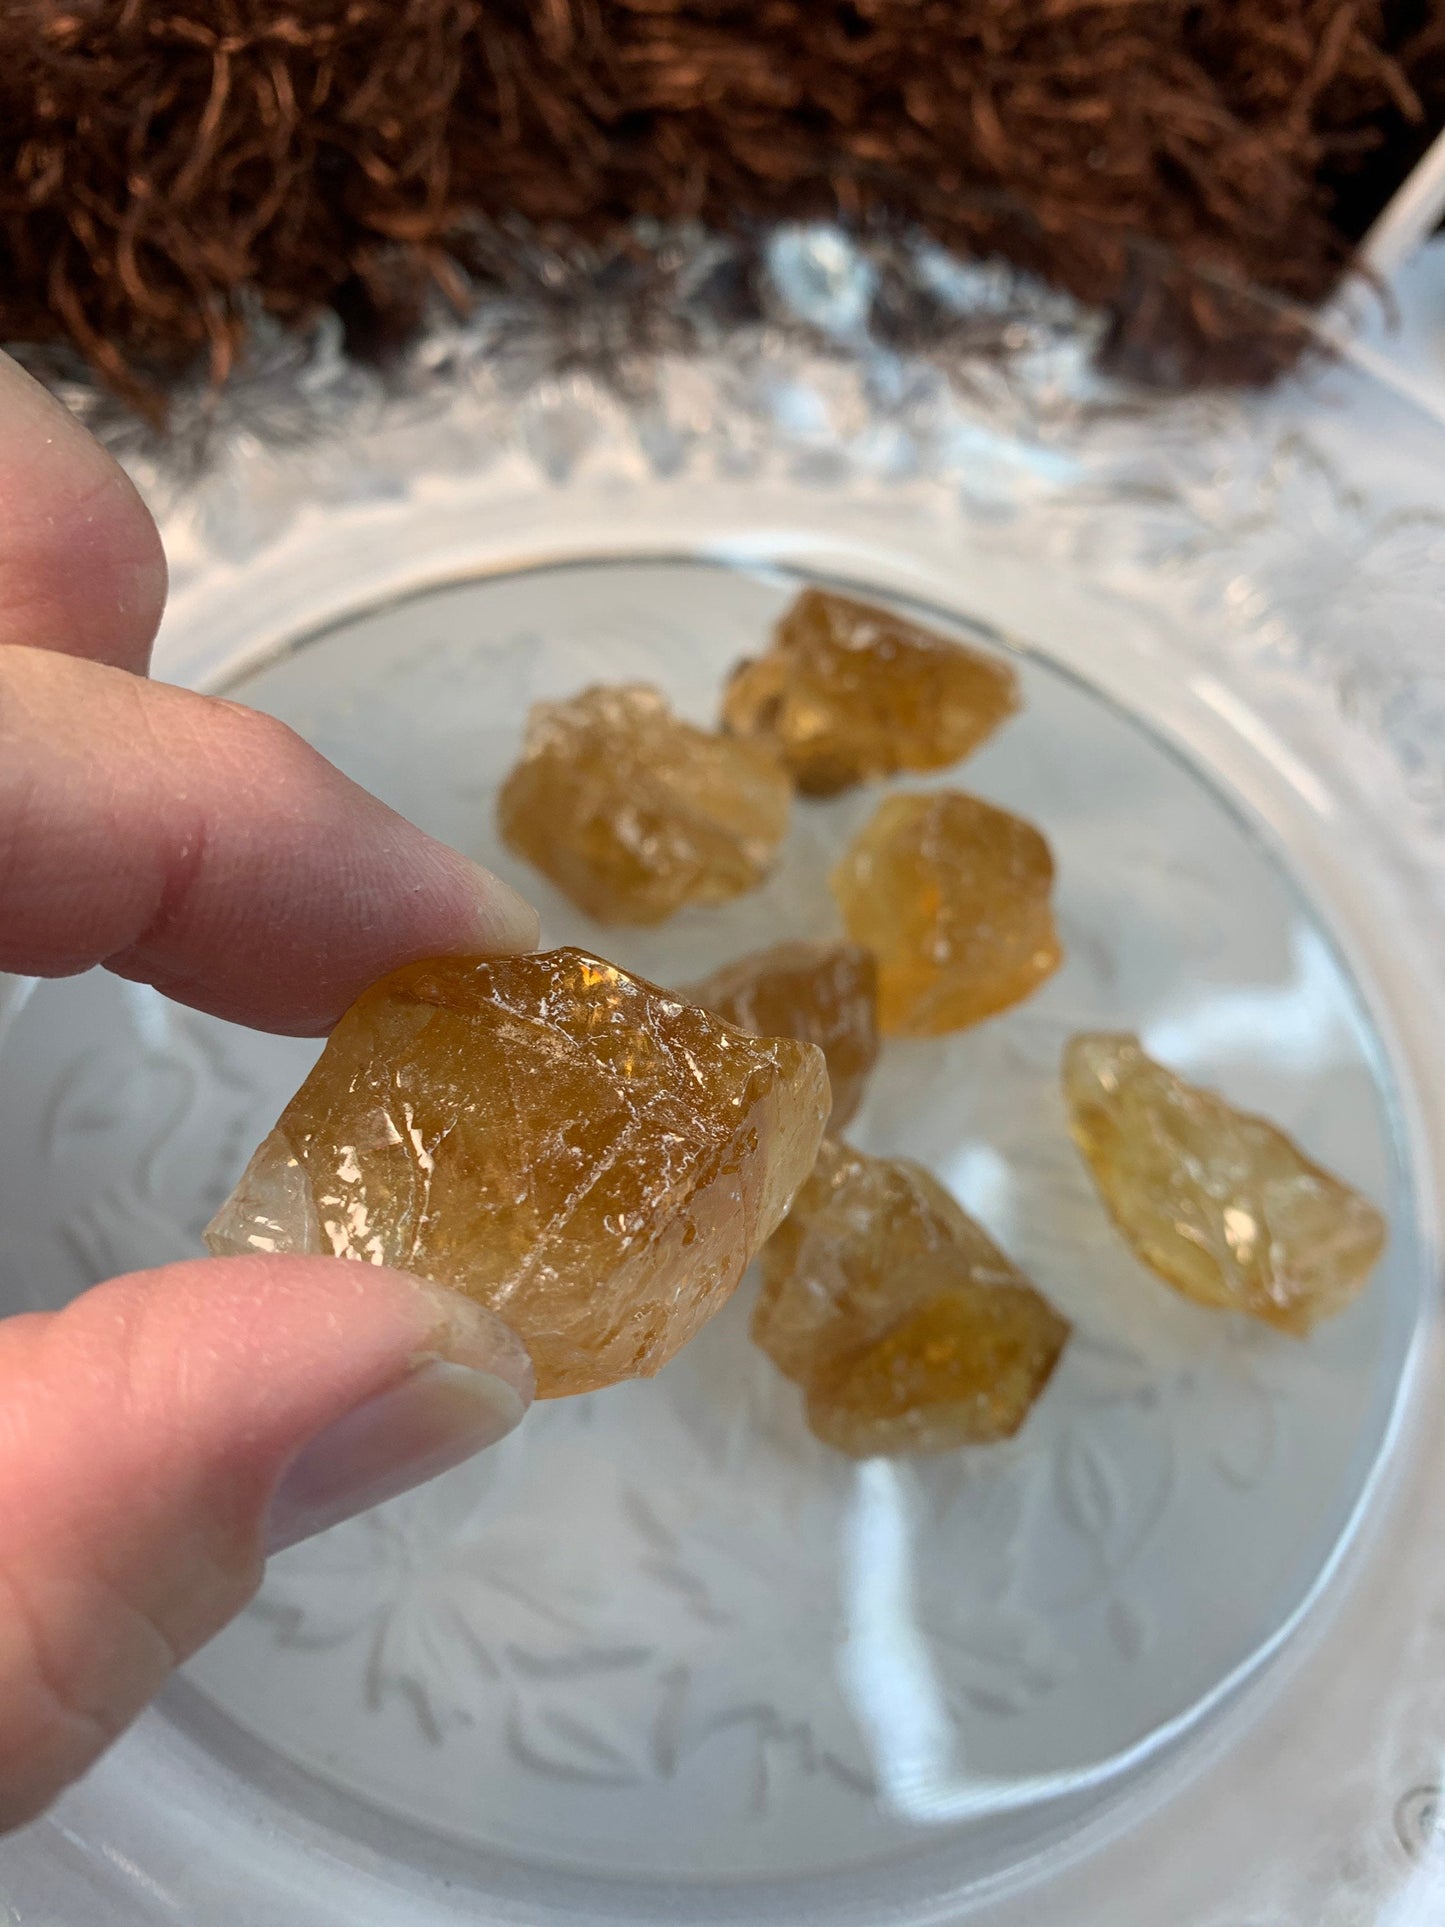 Honey Calcite, (7/8" - 1 1/8")  Raw Stone, Solar Plexus Chakra, Powerful Healing Stone 0126